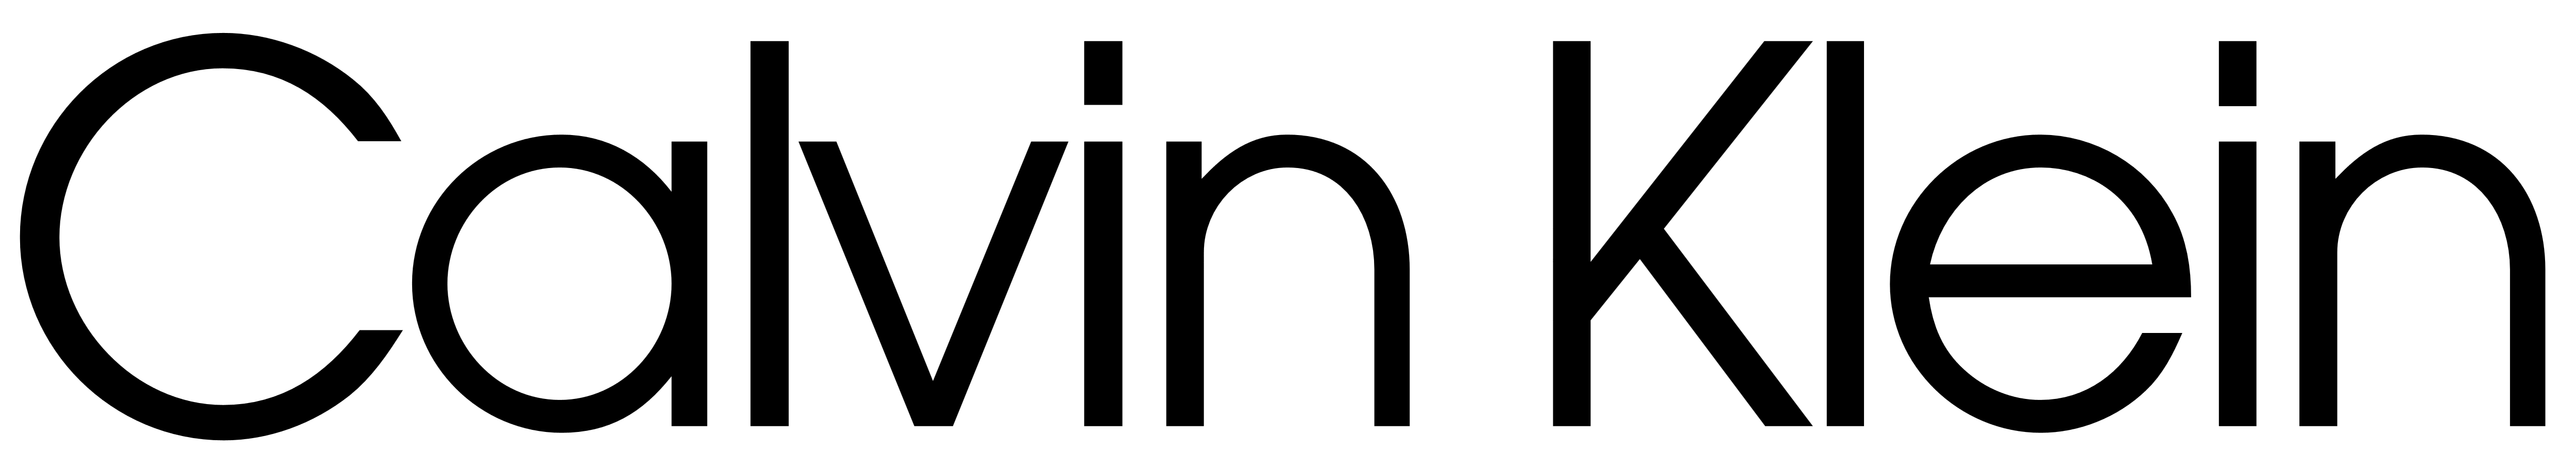 Logo Calvin Klein PNG Immagine di alta qualità